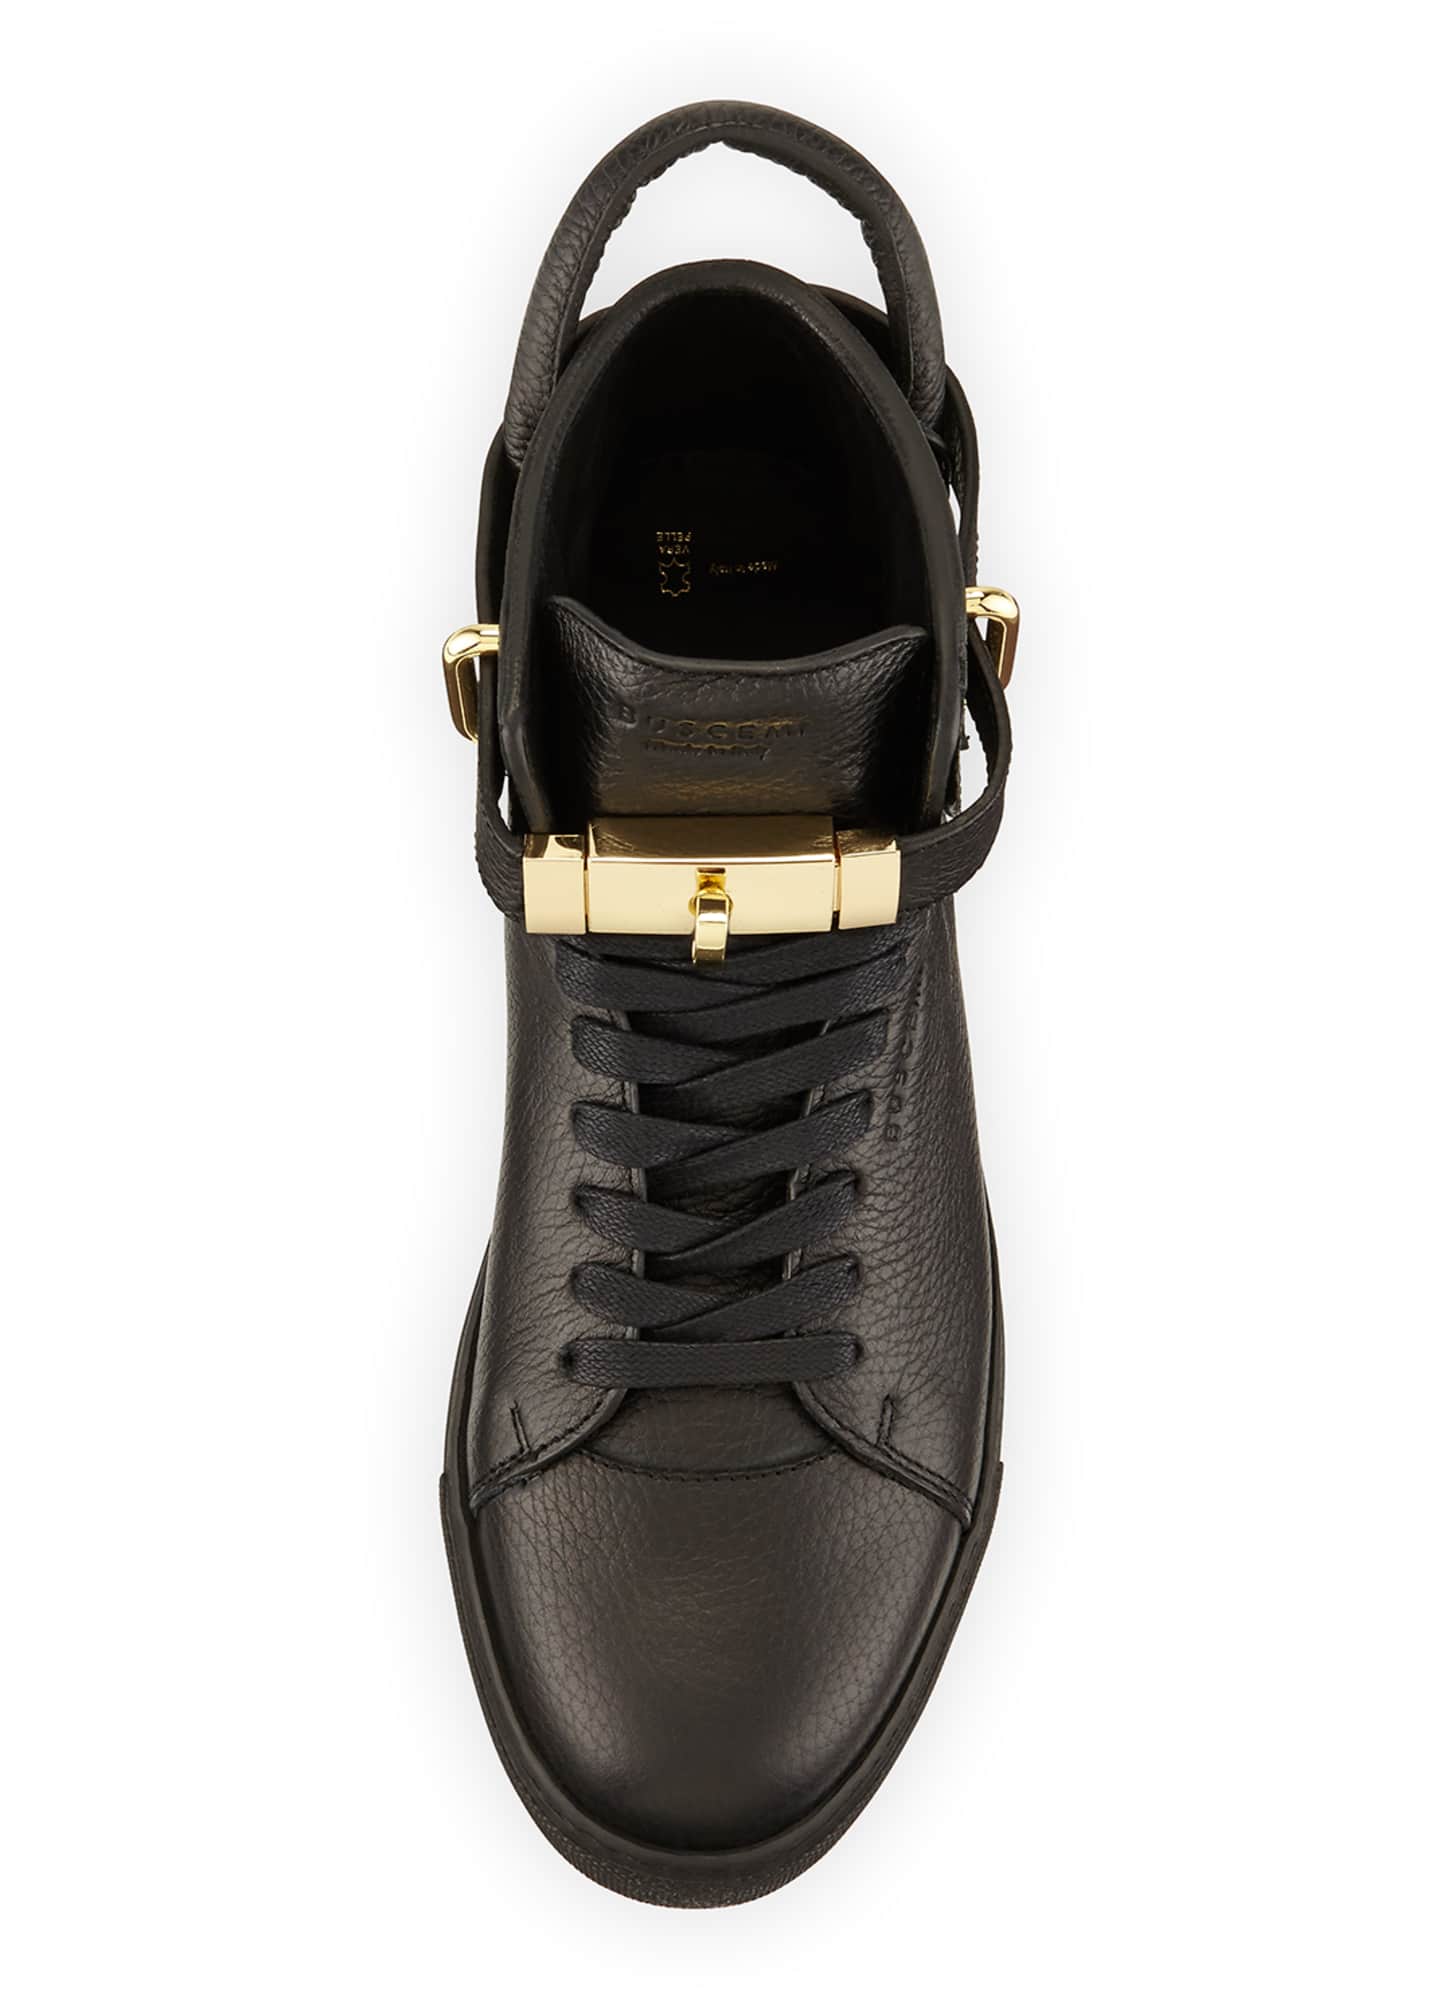 Ubestemt kaste støv i øjnene Telemacos Buscemi 100mm High-Top Leather Sneaker with Padlock, Black - Bergdorf  Goodman